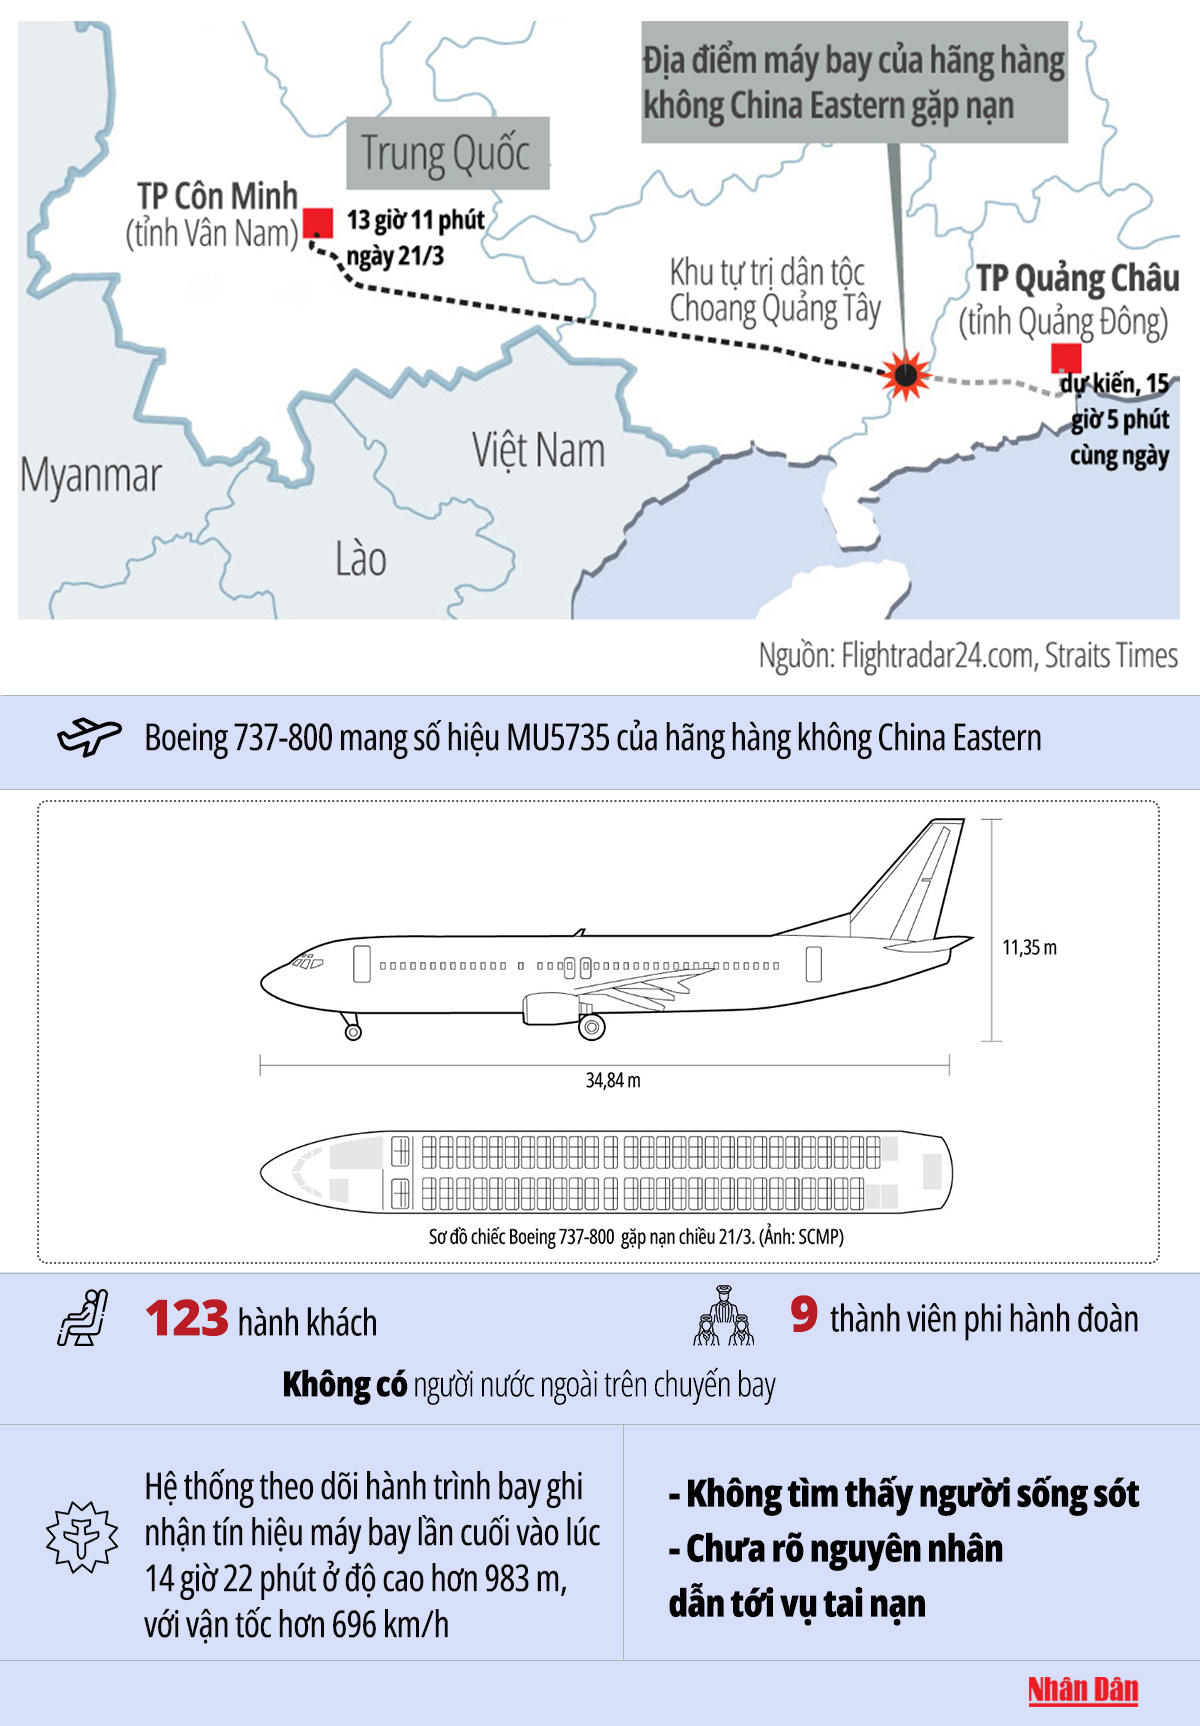 Vụ tai nạn máy bay chở 132 người tại Trung Quốc - Ảnh 1